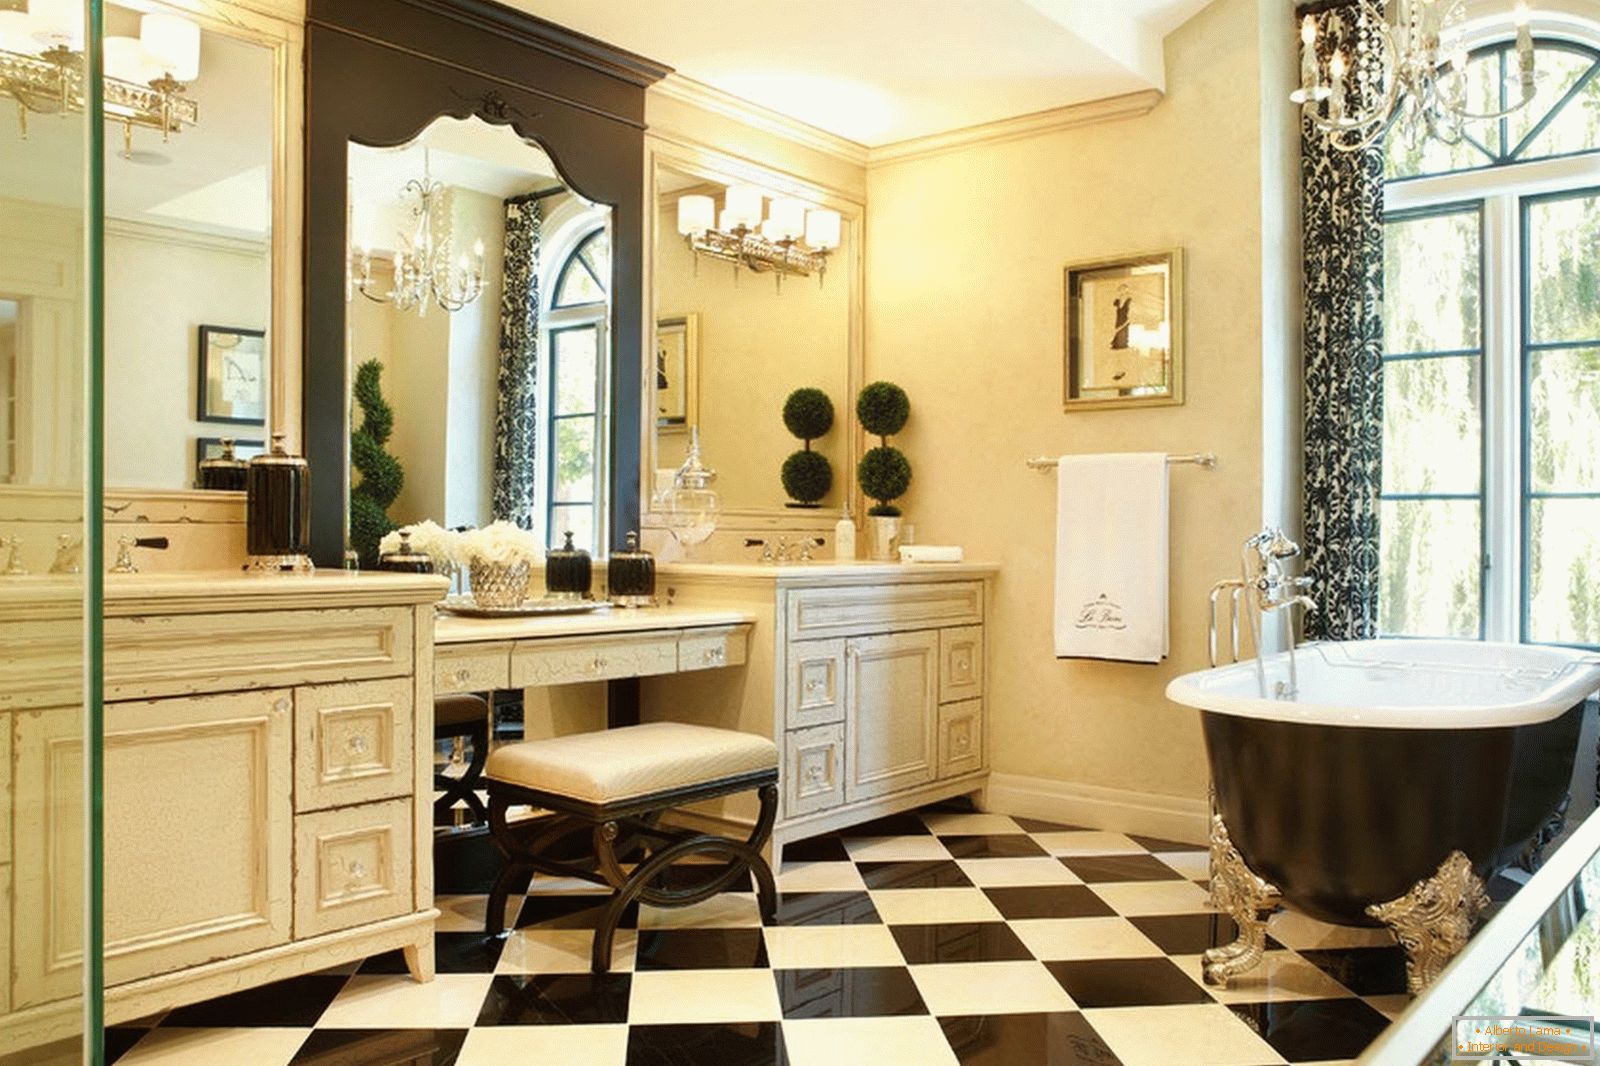 Šahovski pod u kupaonici u klasičnom stilu